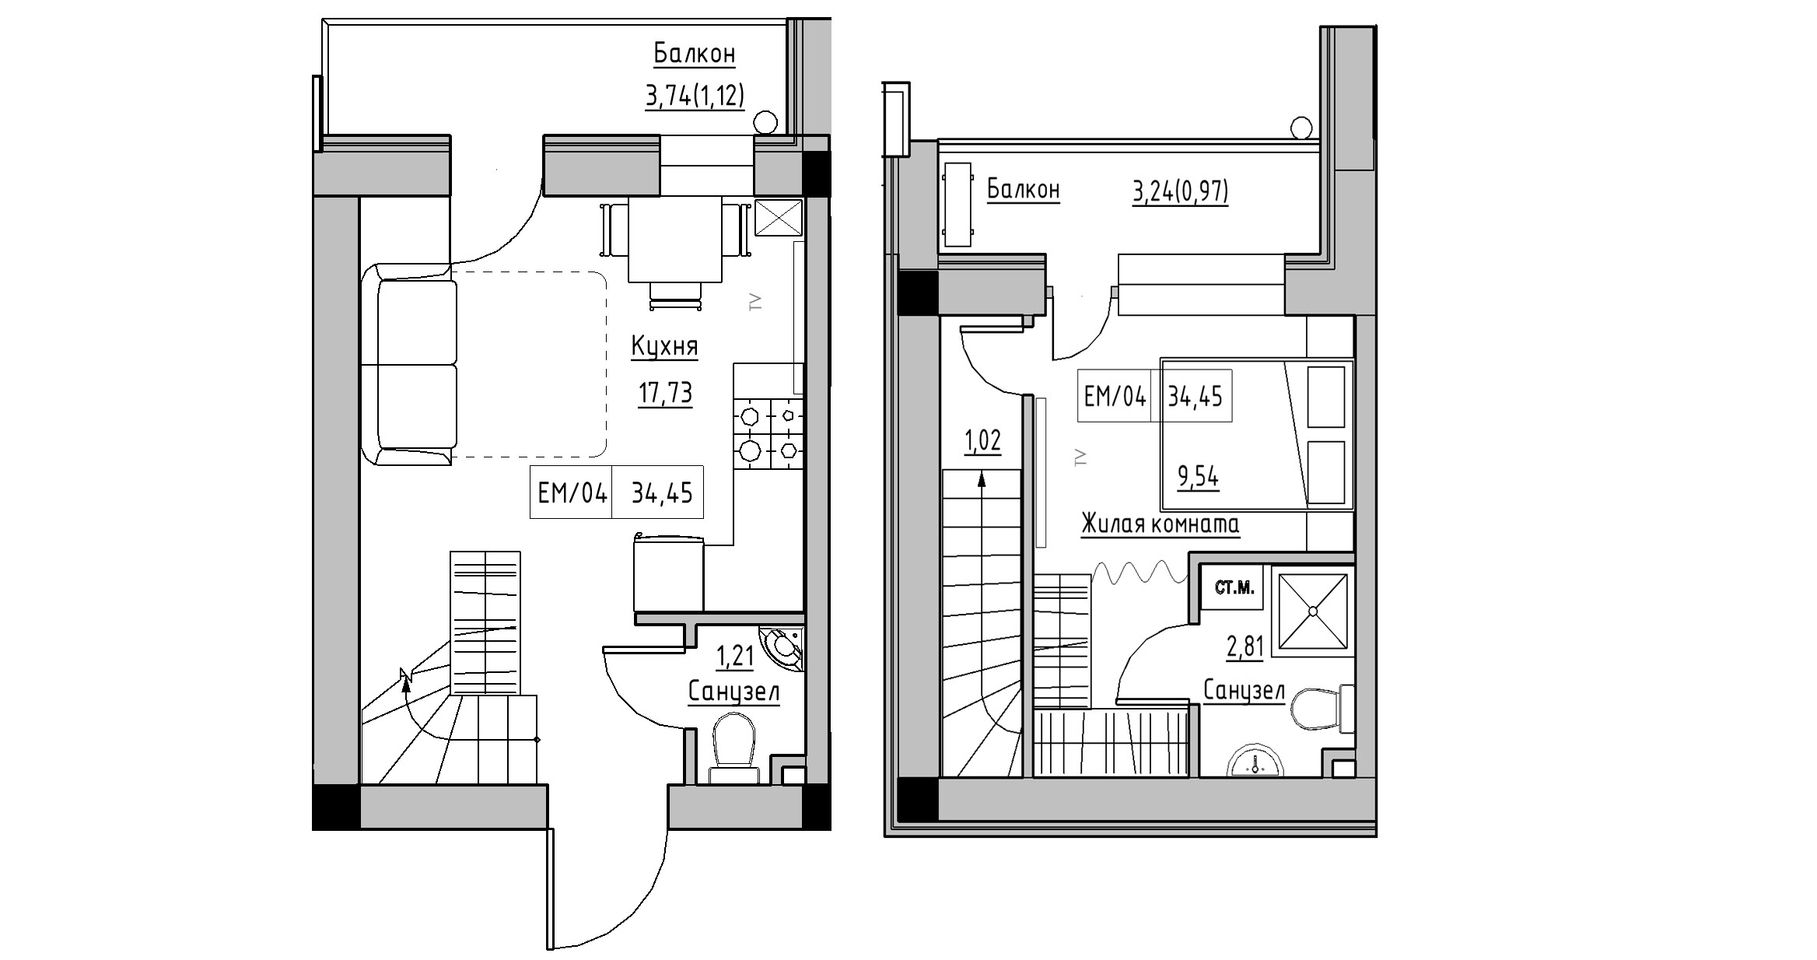 Planning 2-lvl flats area 34.45m2, KS-014-05/0005.